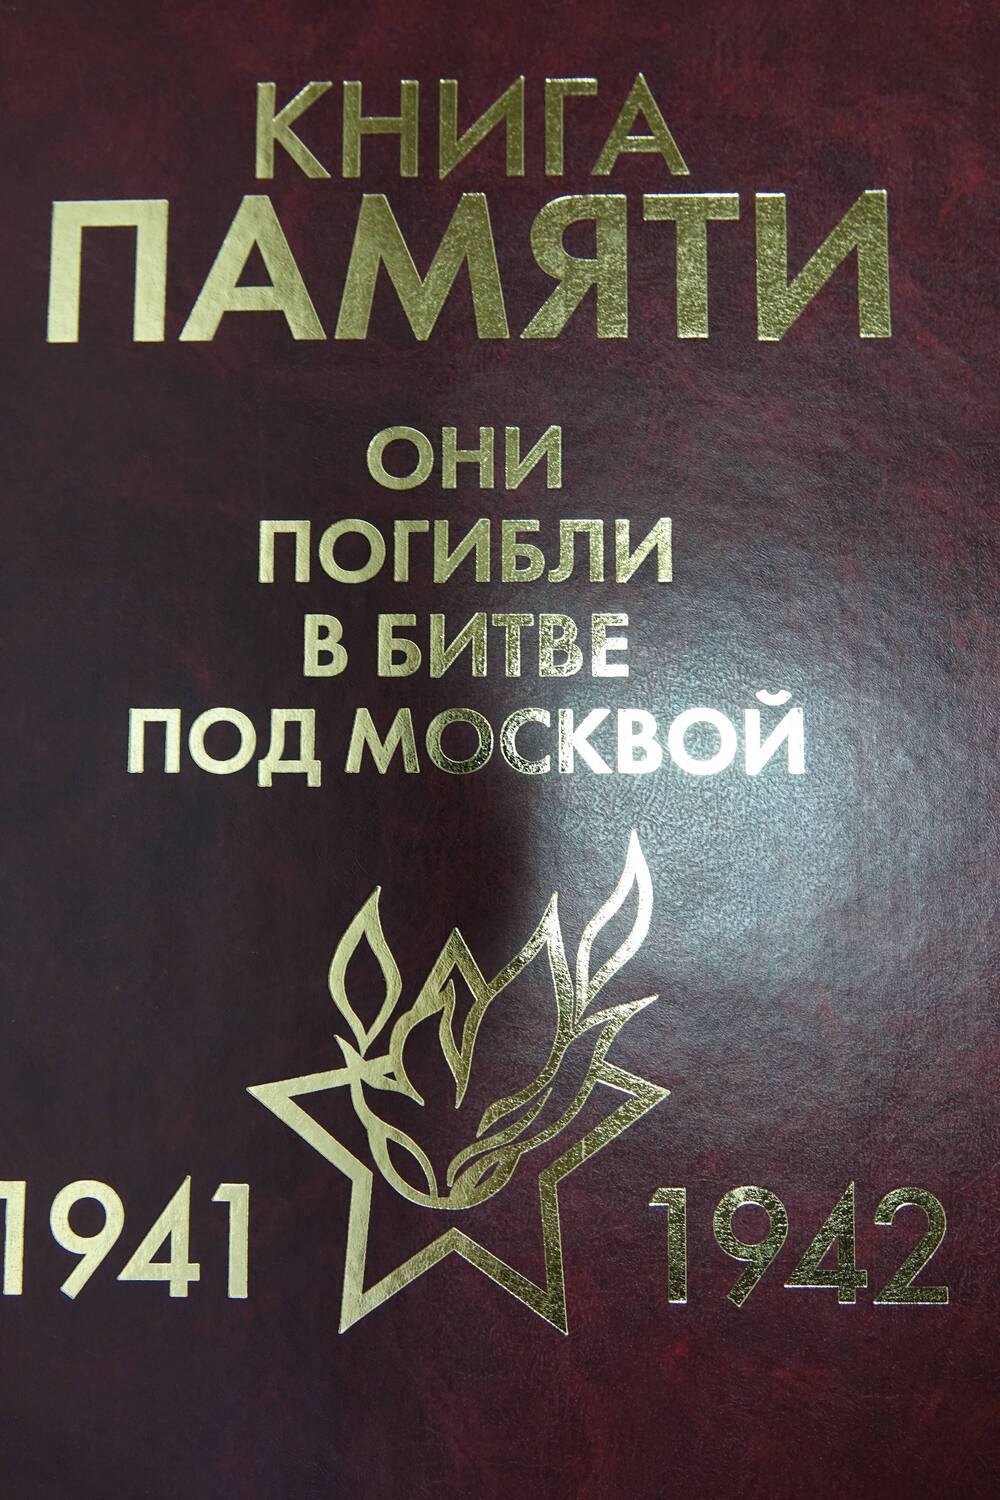 Книга Памяти «Они погибли в битве под Москвой    1941-1942гг.» Том 6 «Ж-З-И»